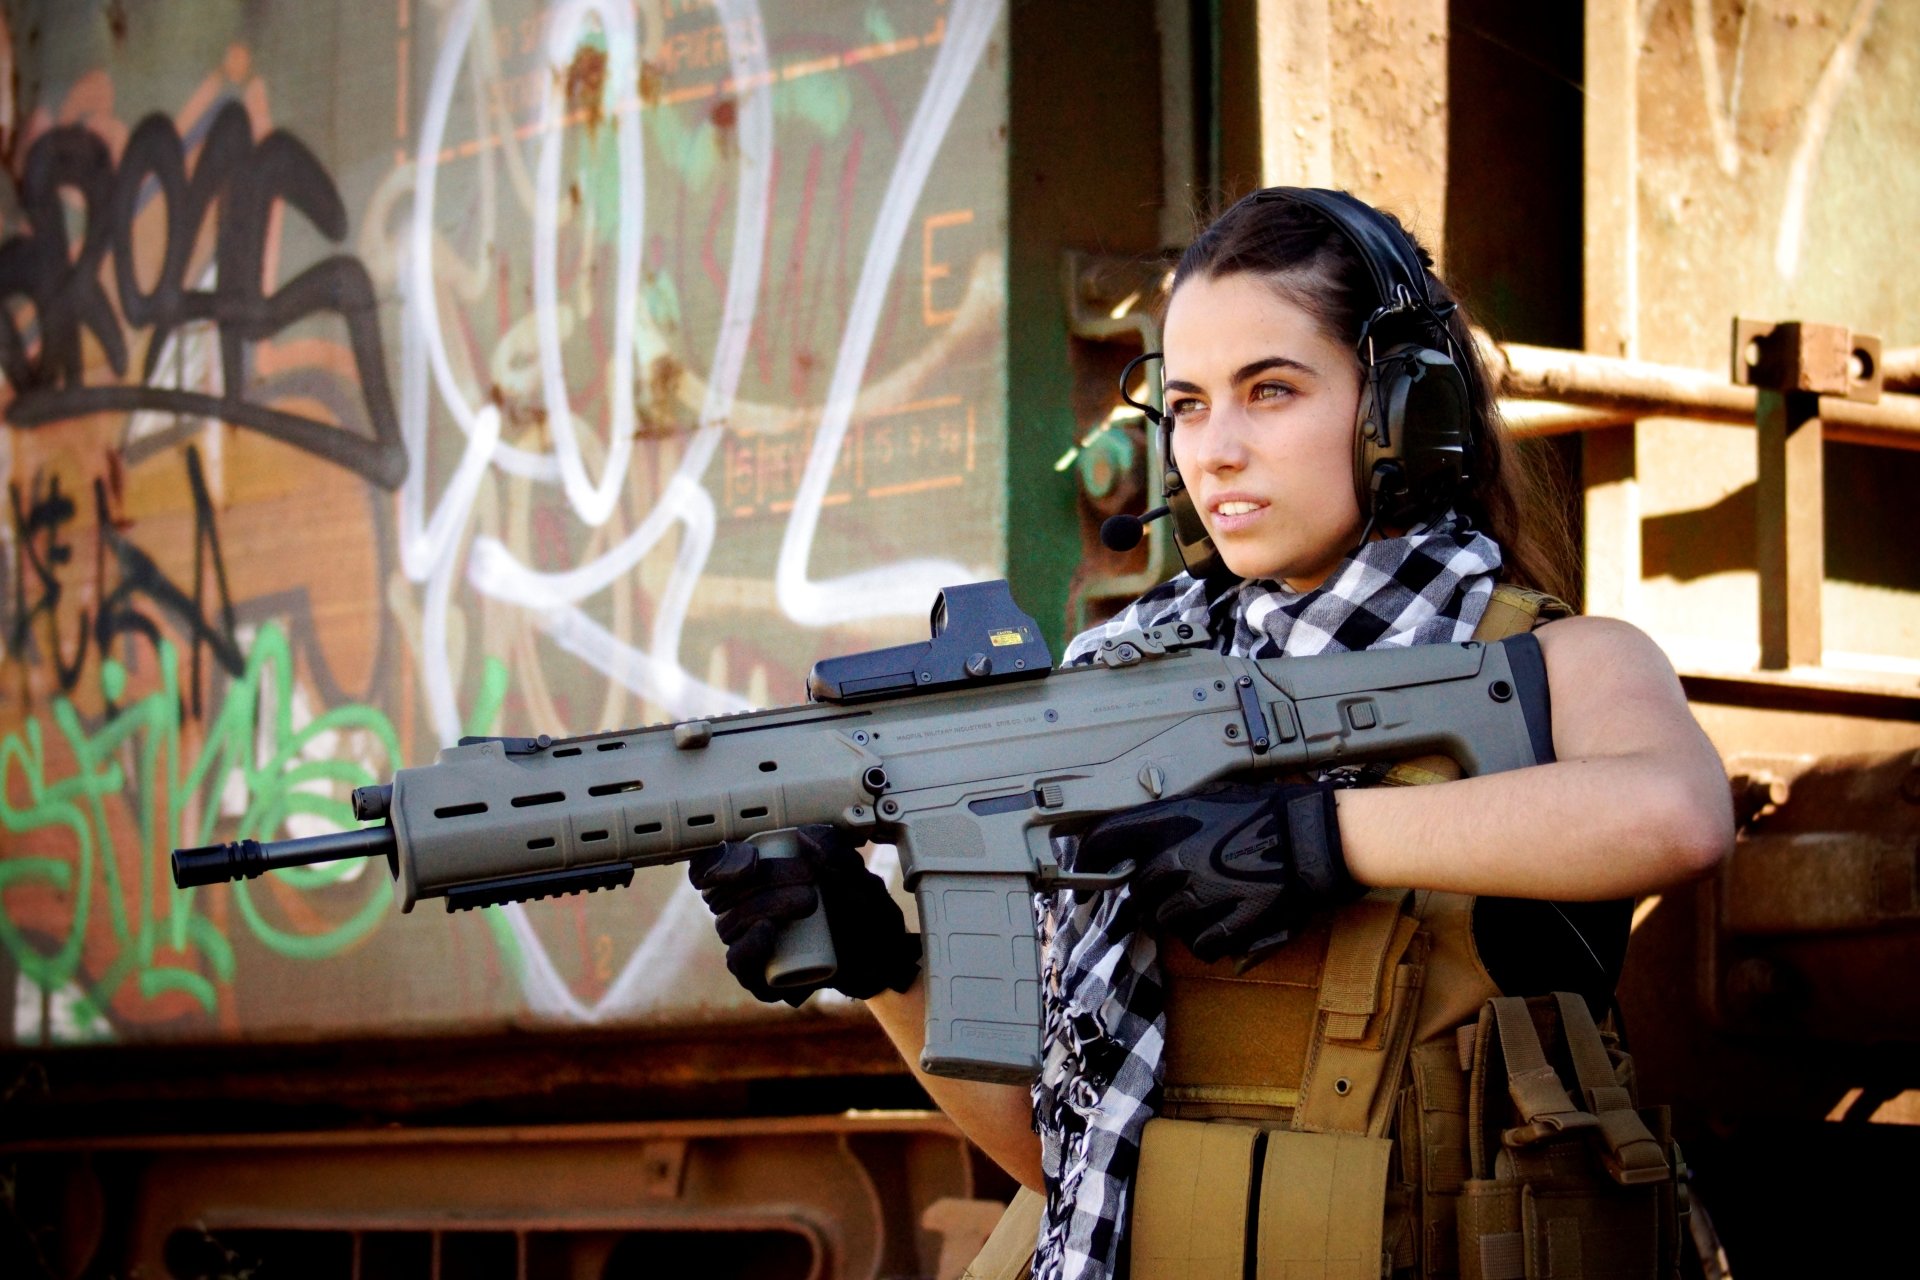 girls and guns wallpaper,gun,firearm,assault rifle,airsoft,airsoft gun